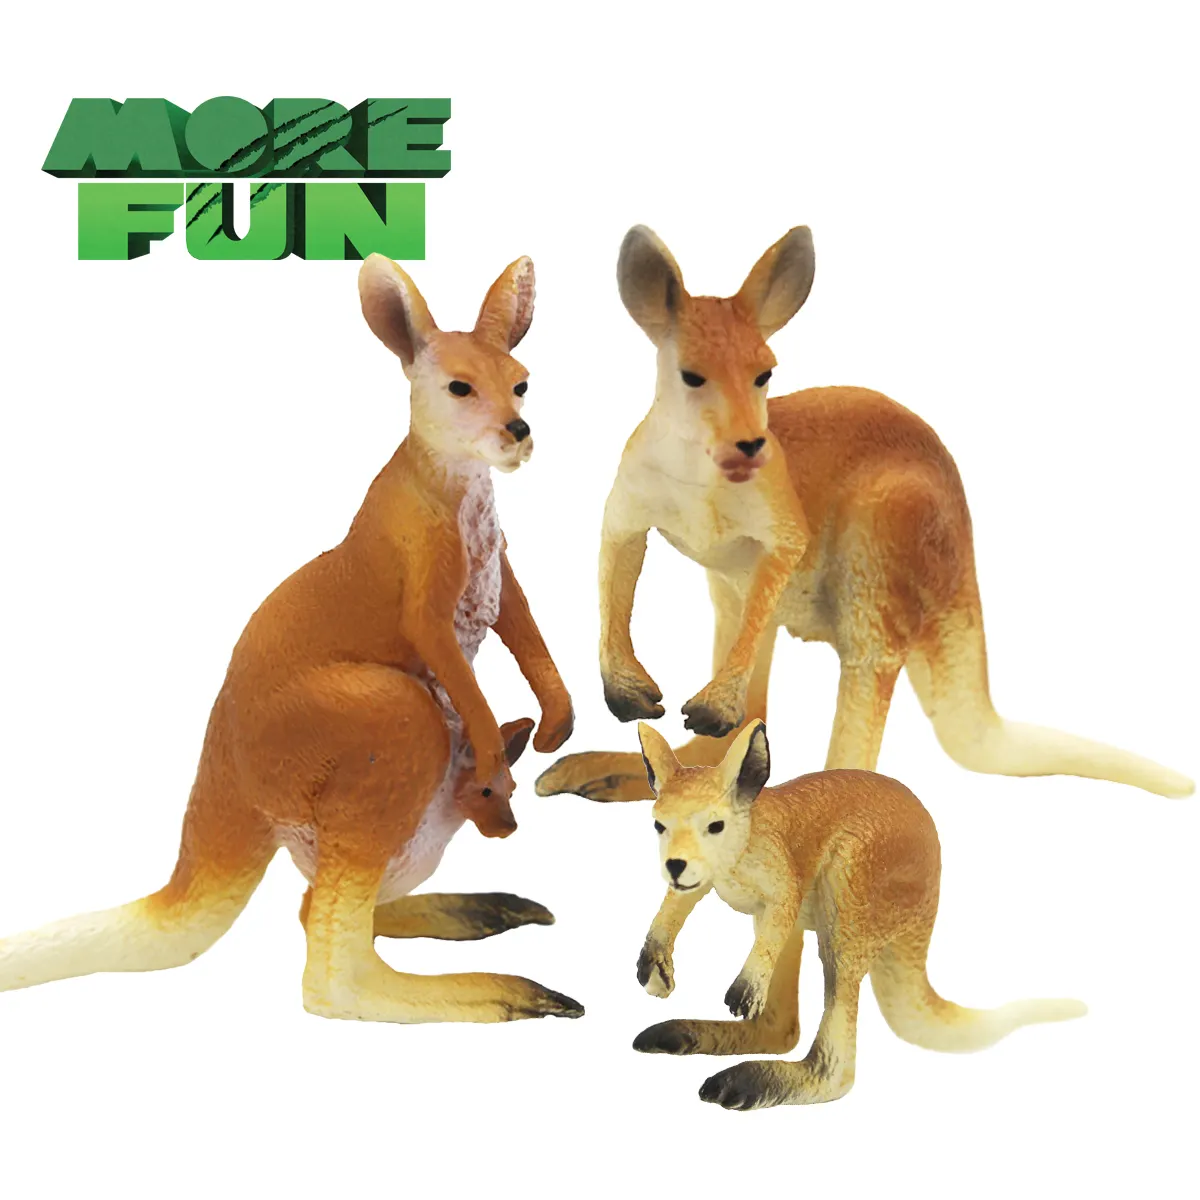 OEM ODM PVC plastik hayvan oyuncakları gerçekçi çevre dostu kanguru aile seti kanguru oyuncaklar